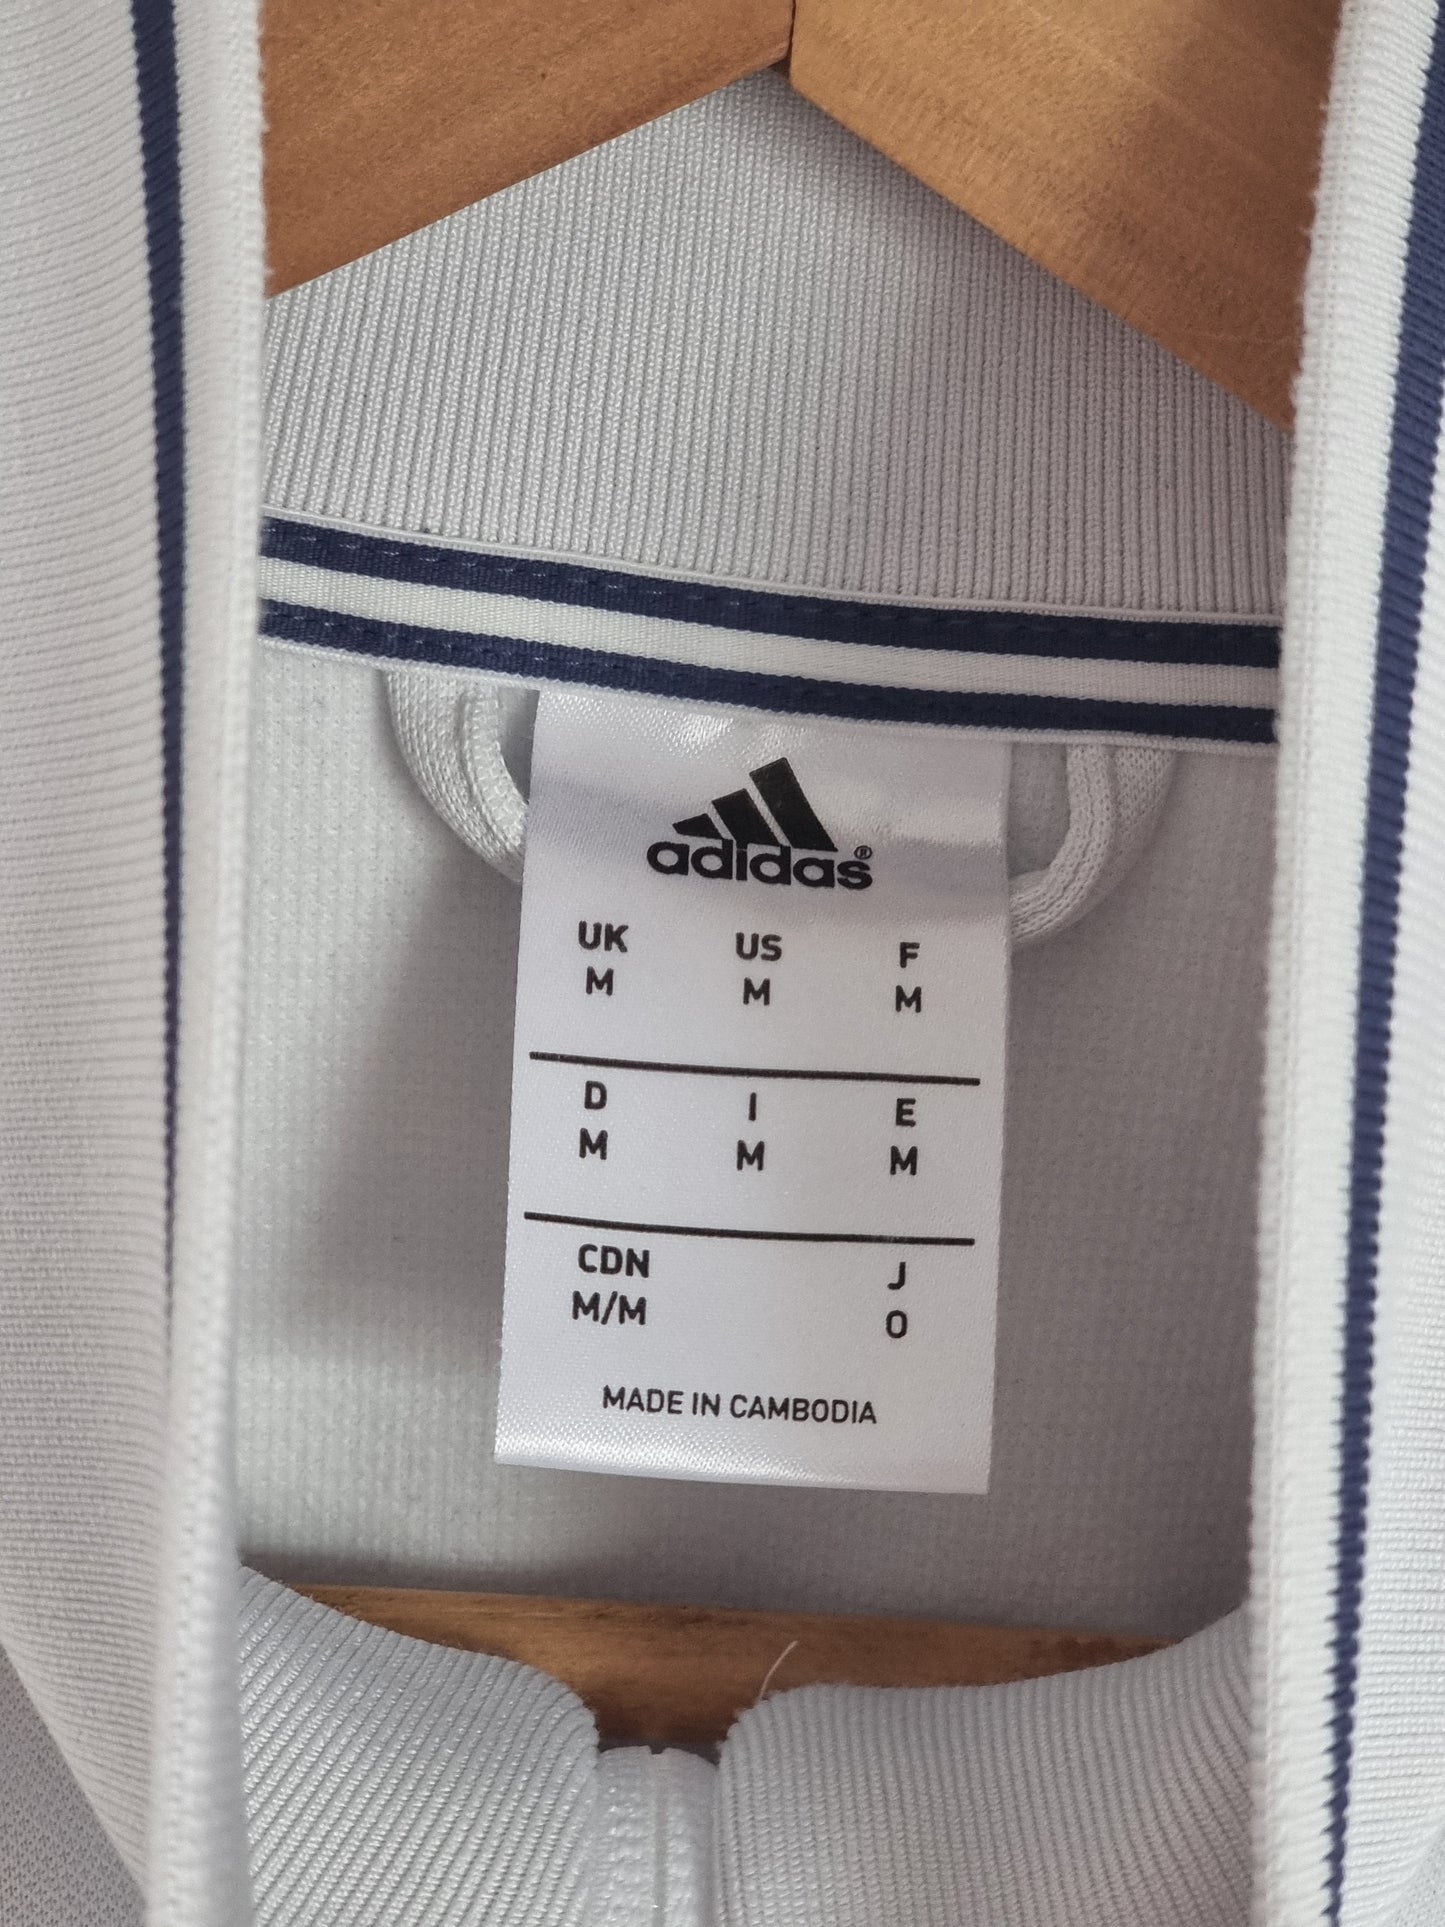 Adidas Real Madrid 15/16 Track Jacket Medium